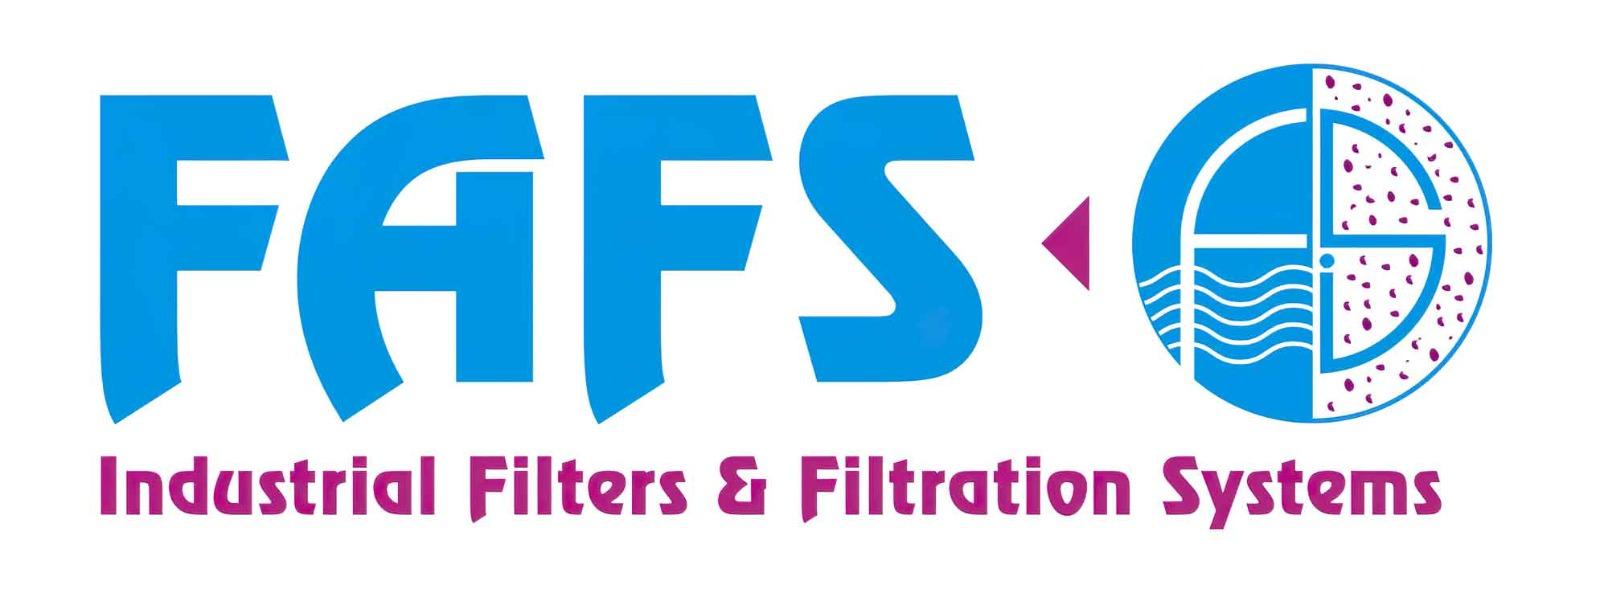 Fluid Air Filtration Technology